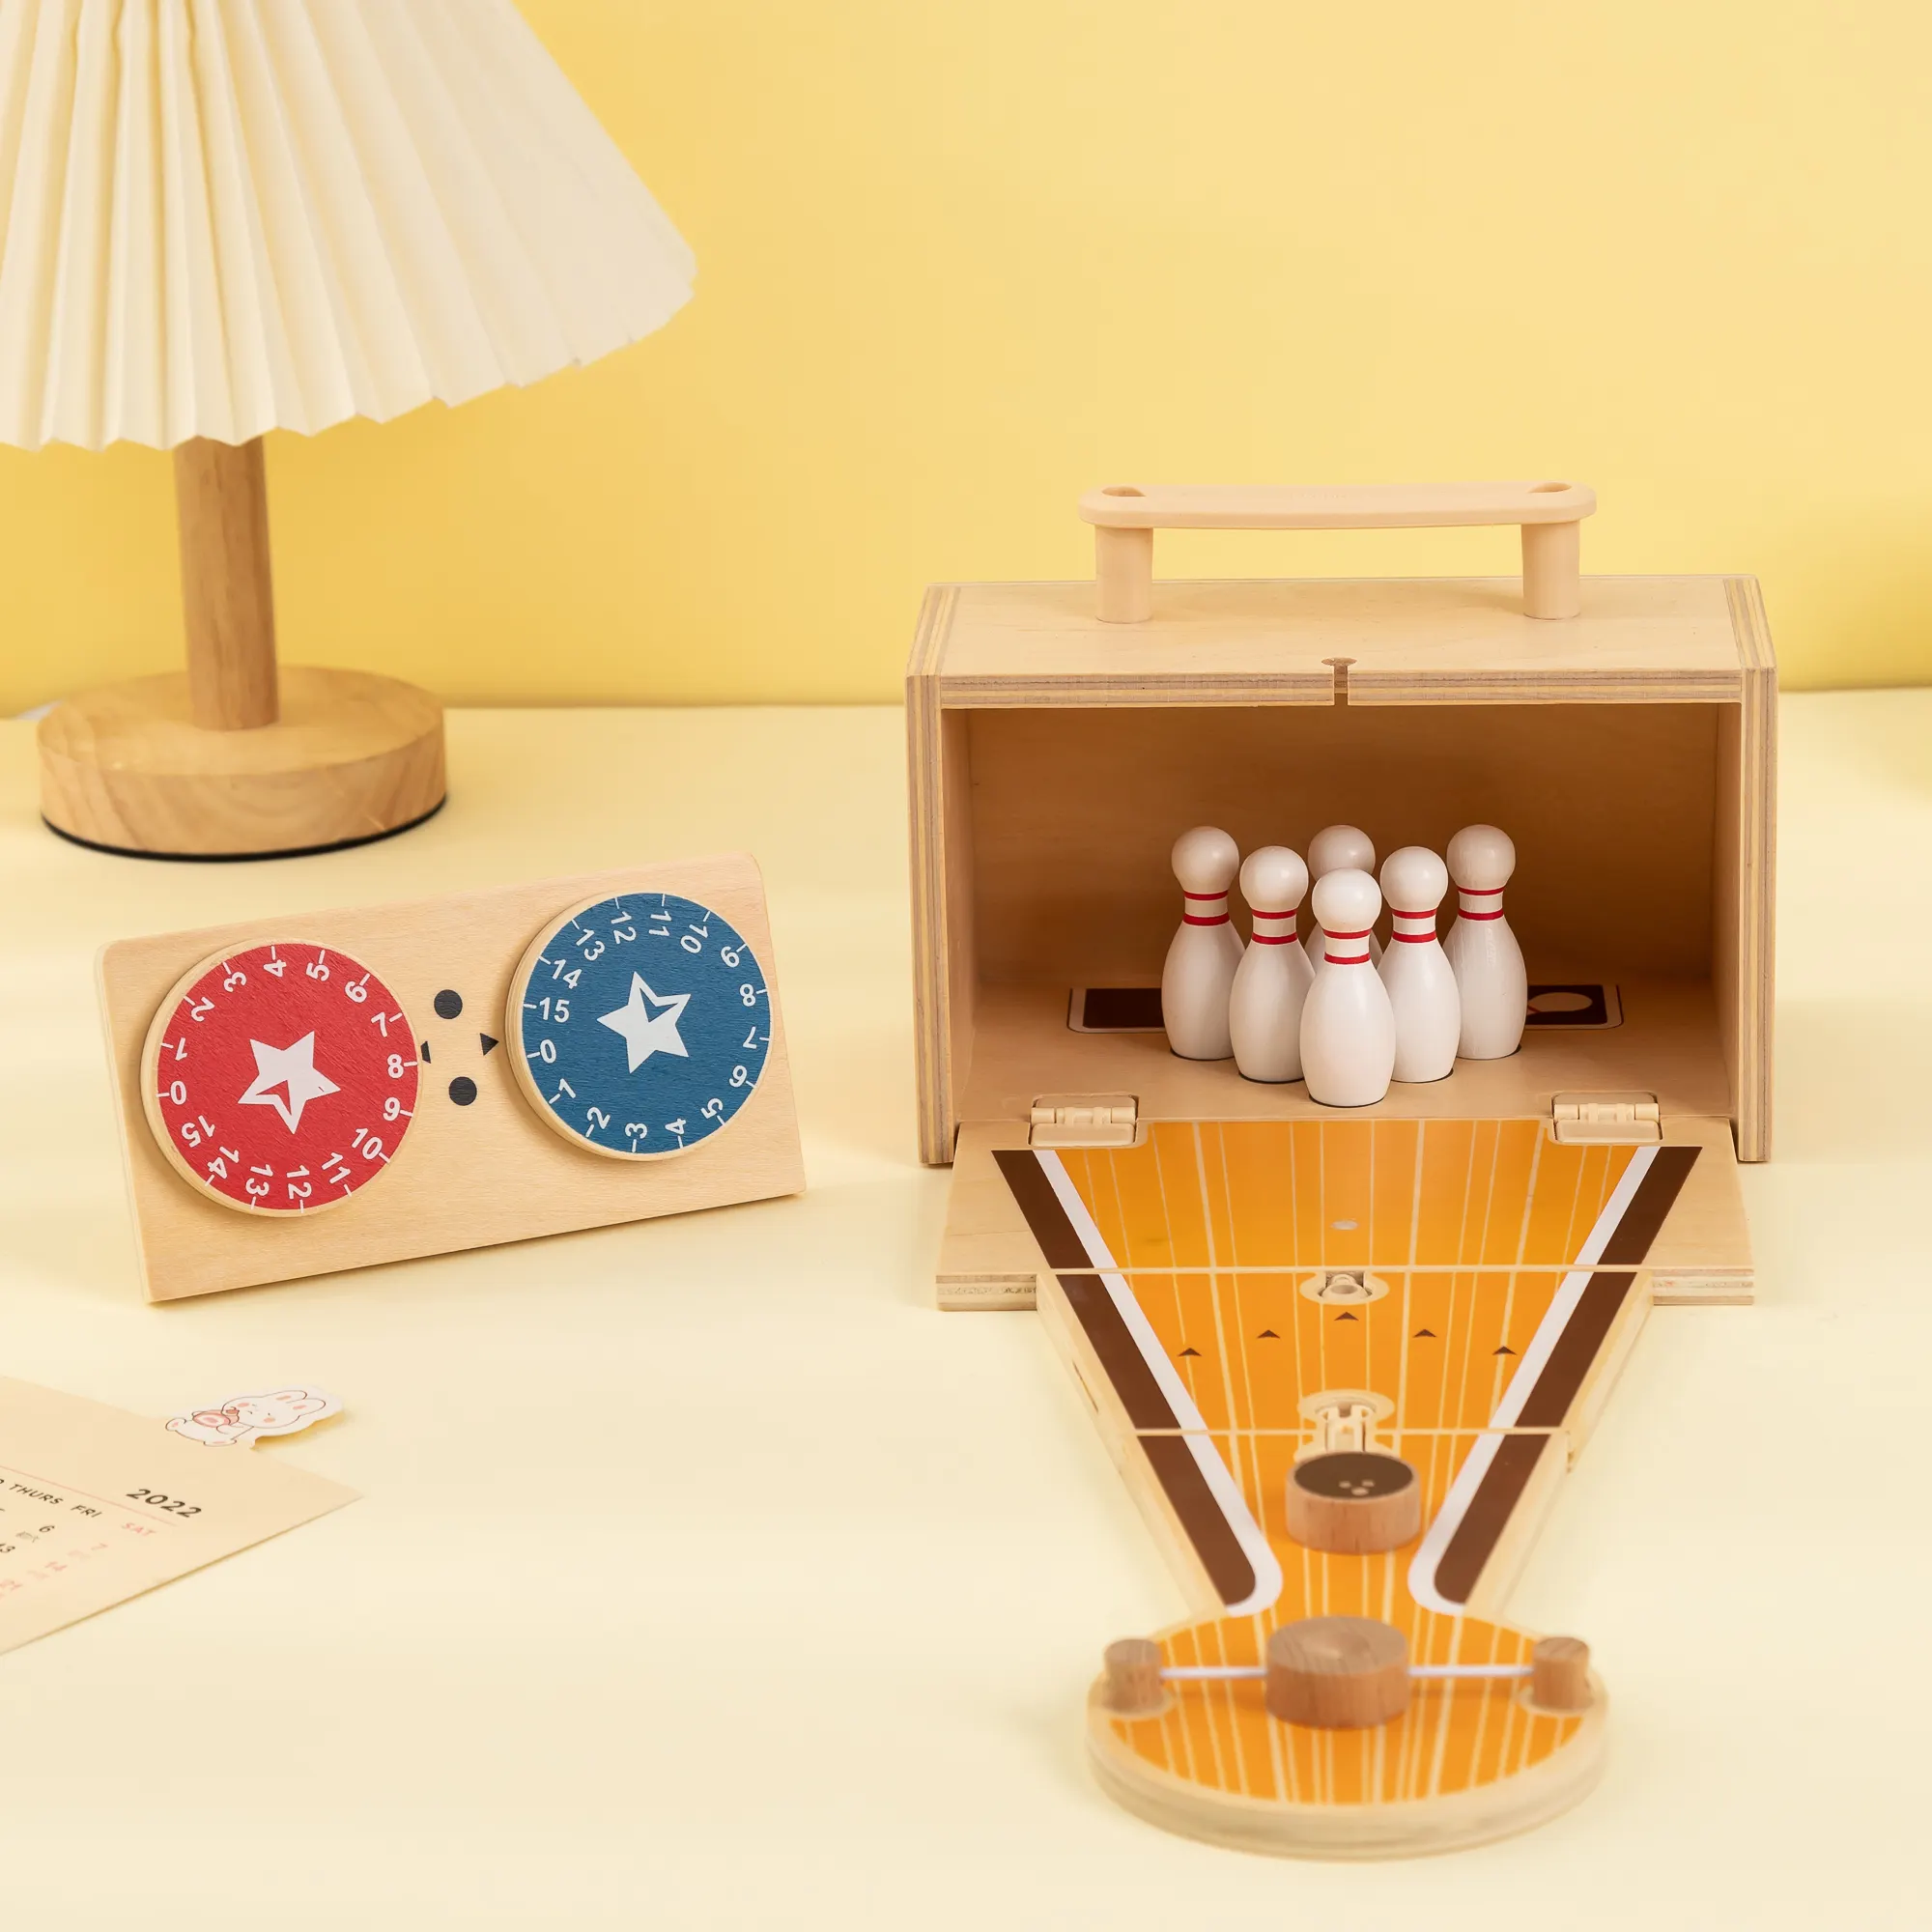 UDEAS Tischspielzeug für Kinder Tischplatte Indoor Tischplatte Holz-Mini-Bowlingspiele für Kind